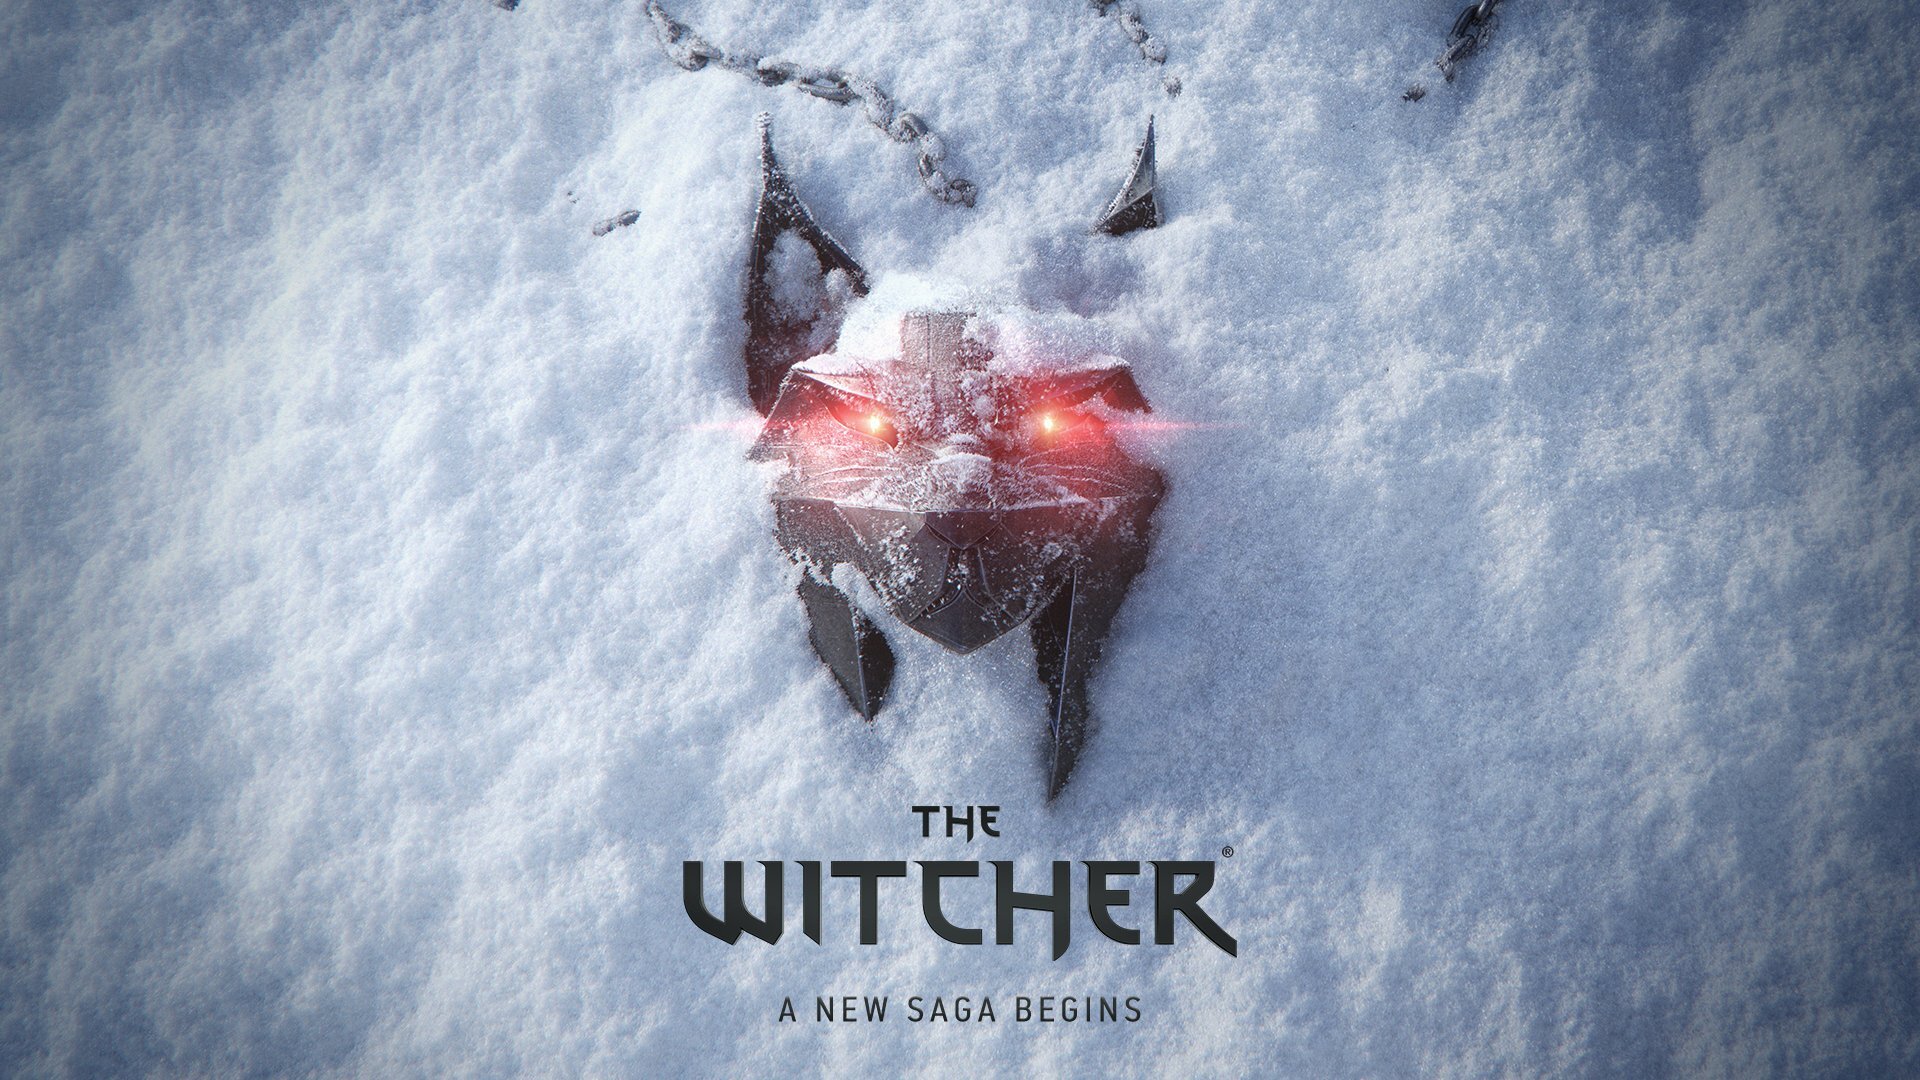 Η CD Projekt RED ανακοίνωσε πως ένας νέος The Witcher τίτλος βρίσκεται υπό ανάπτυξη